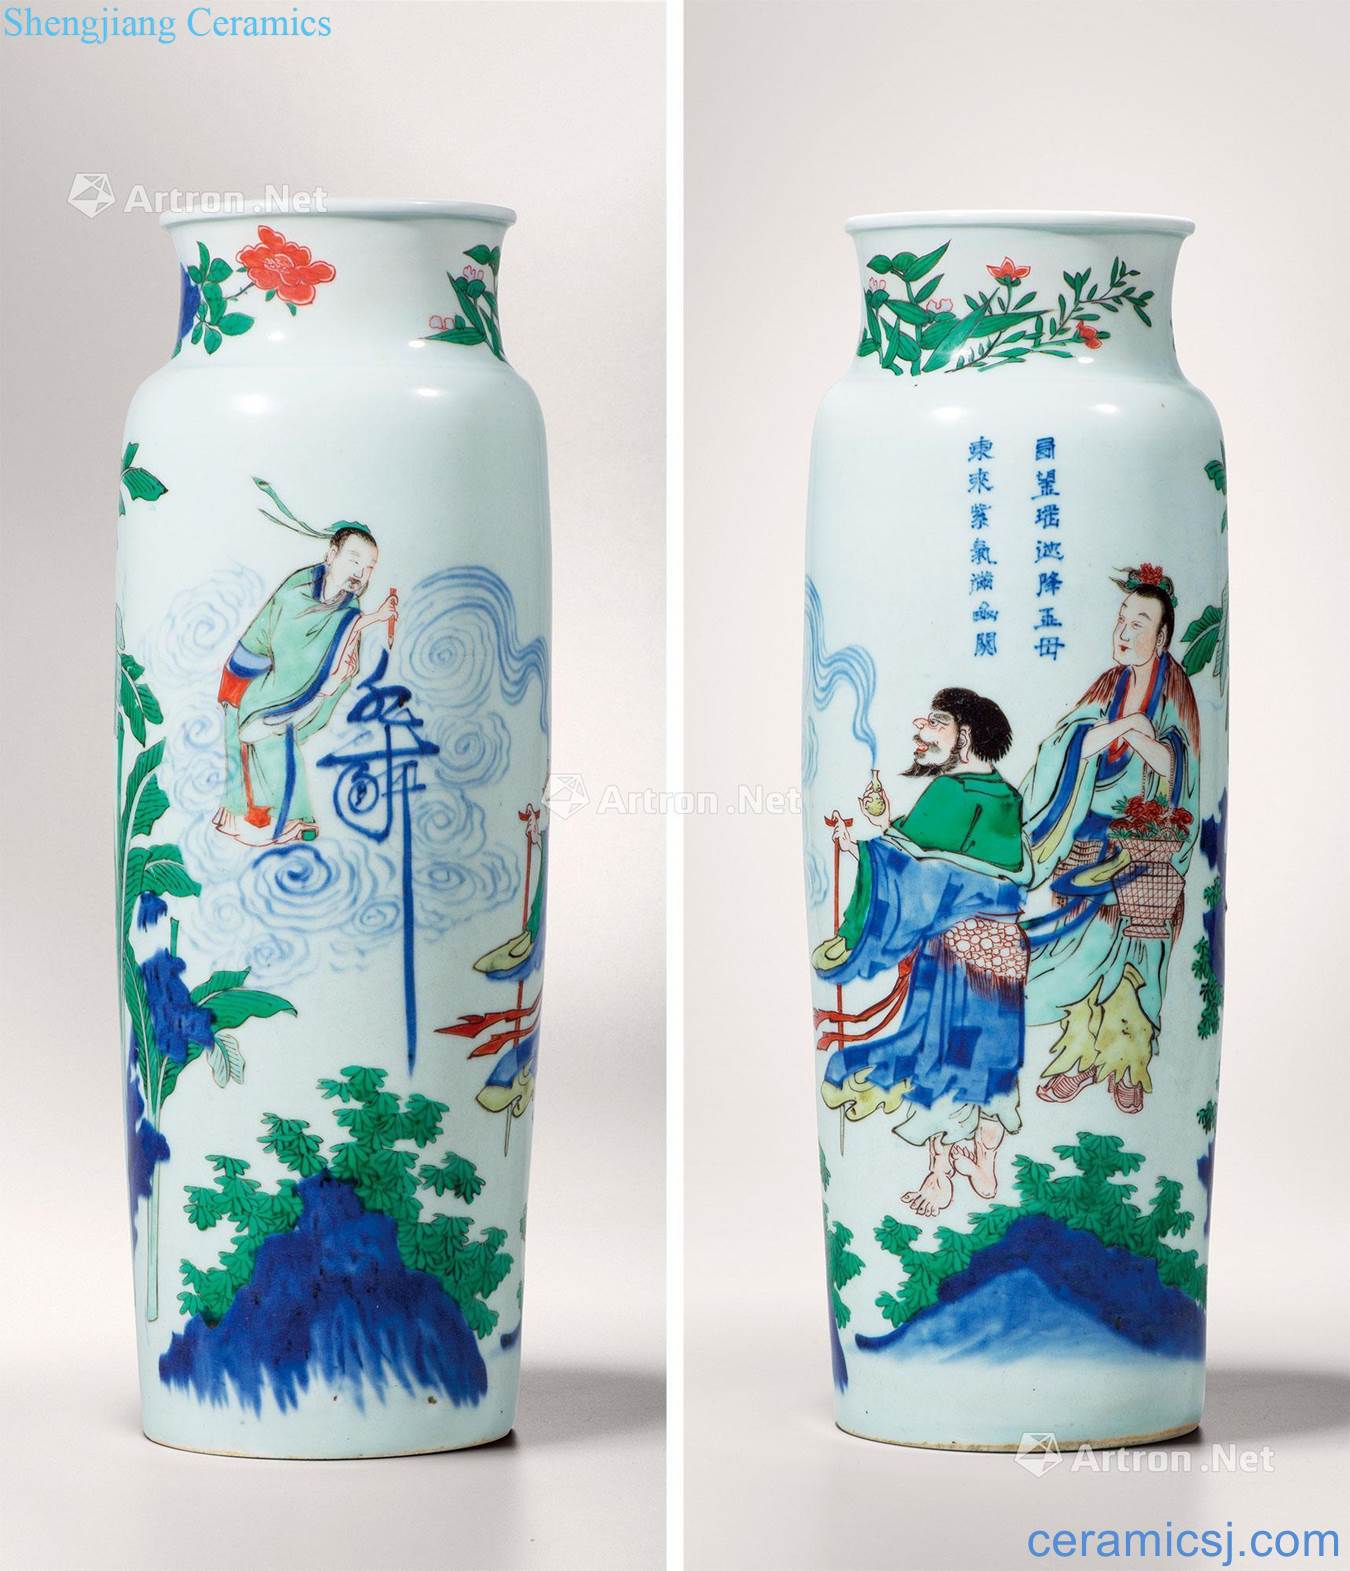 Qing shunzhi Li blue blue color turn iron mining and celebrates the life of cylinder bottles